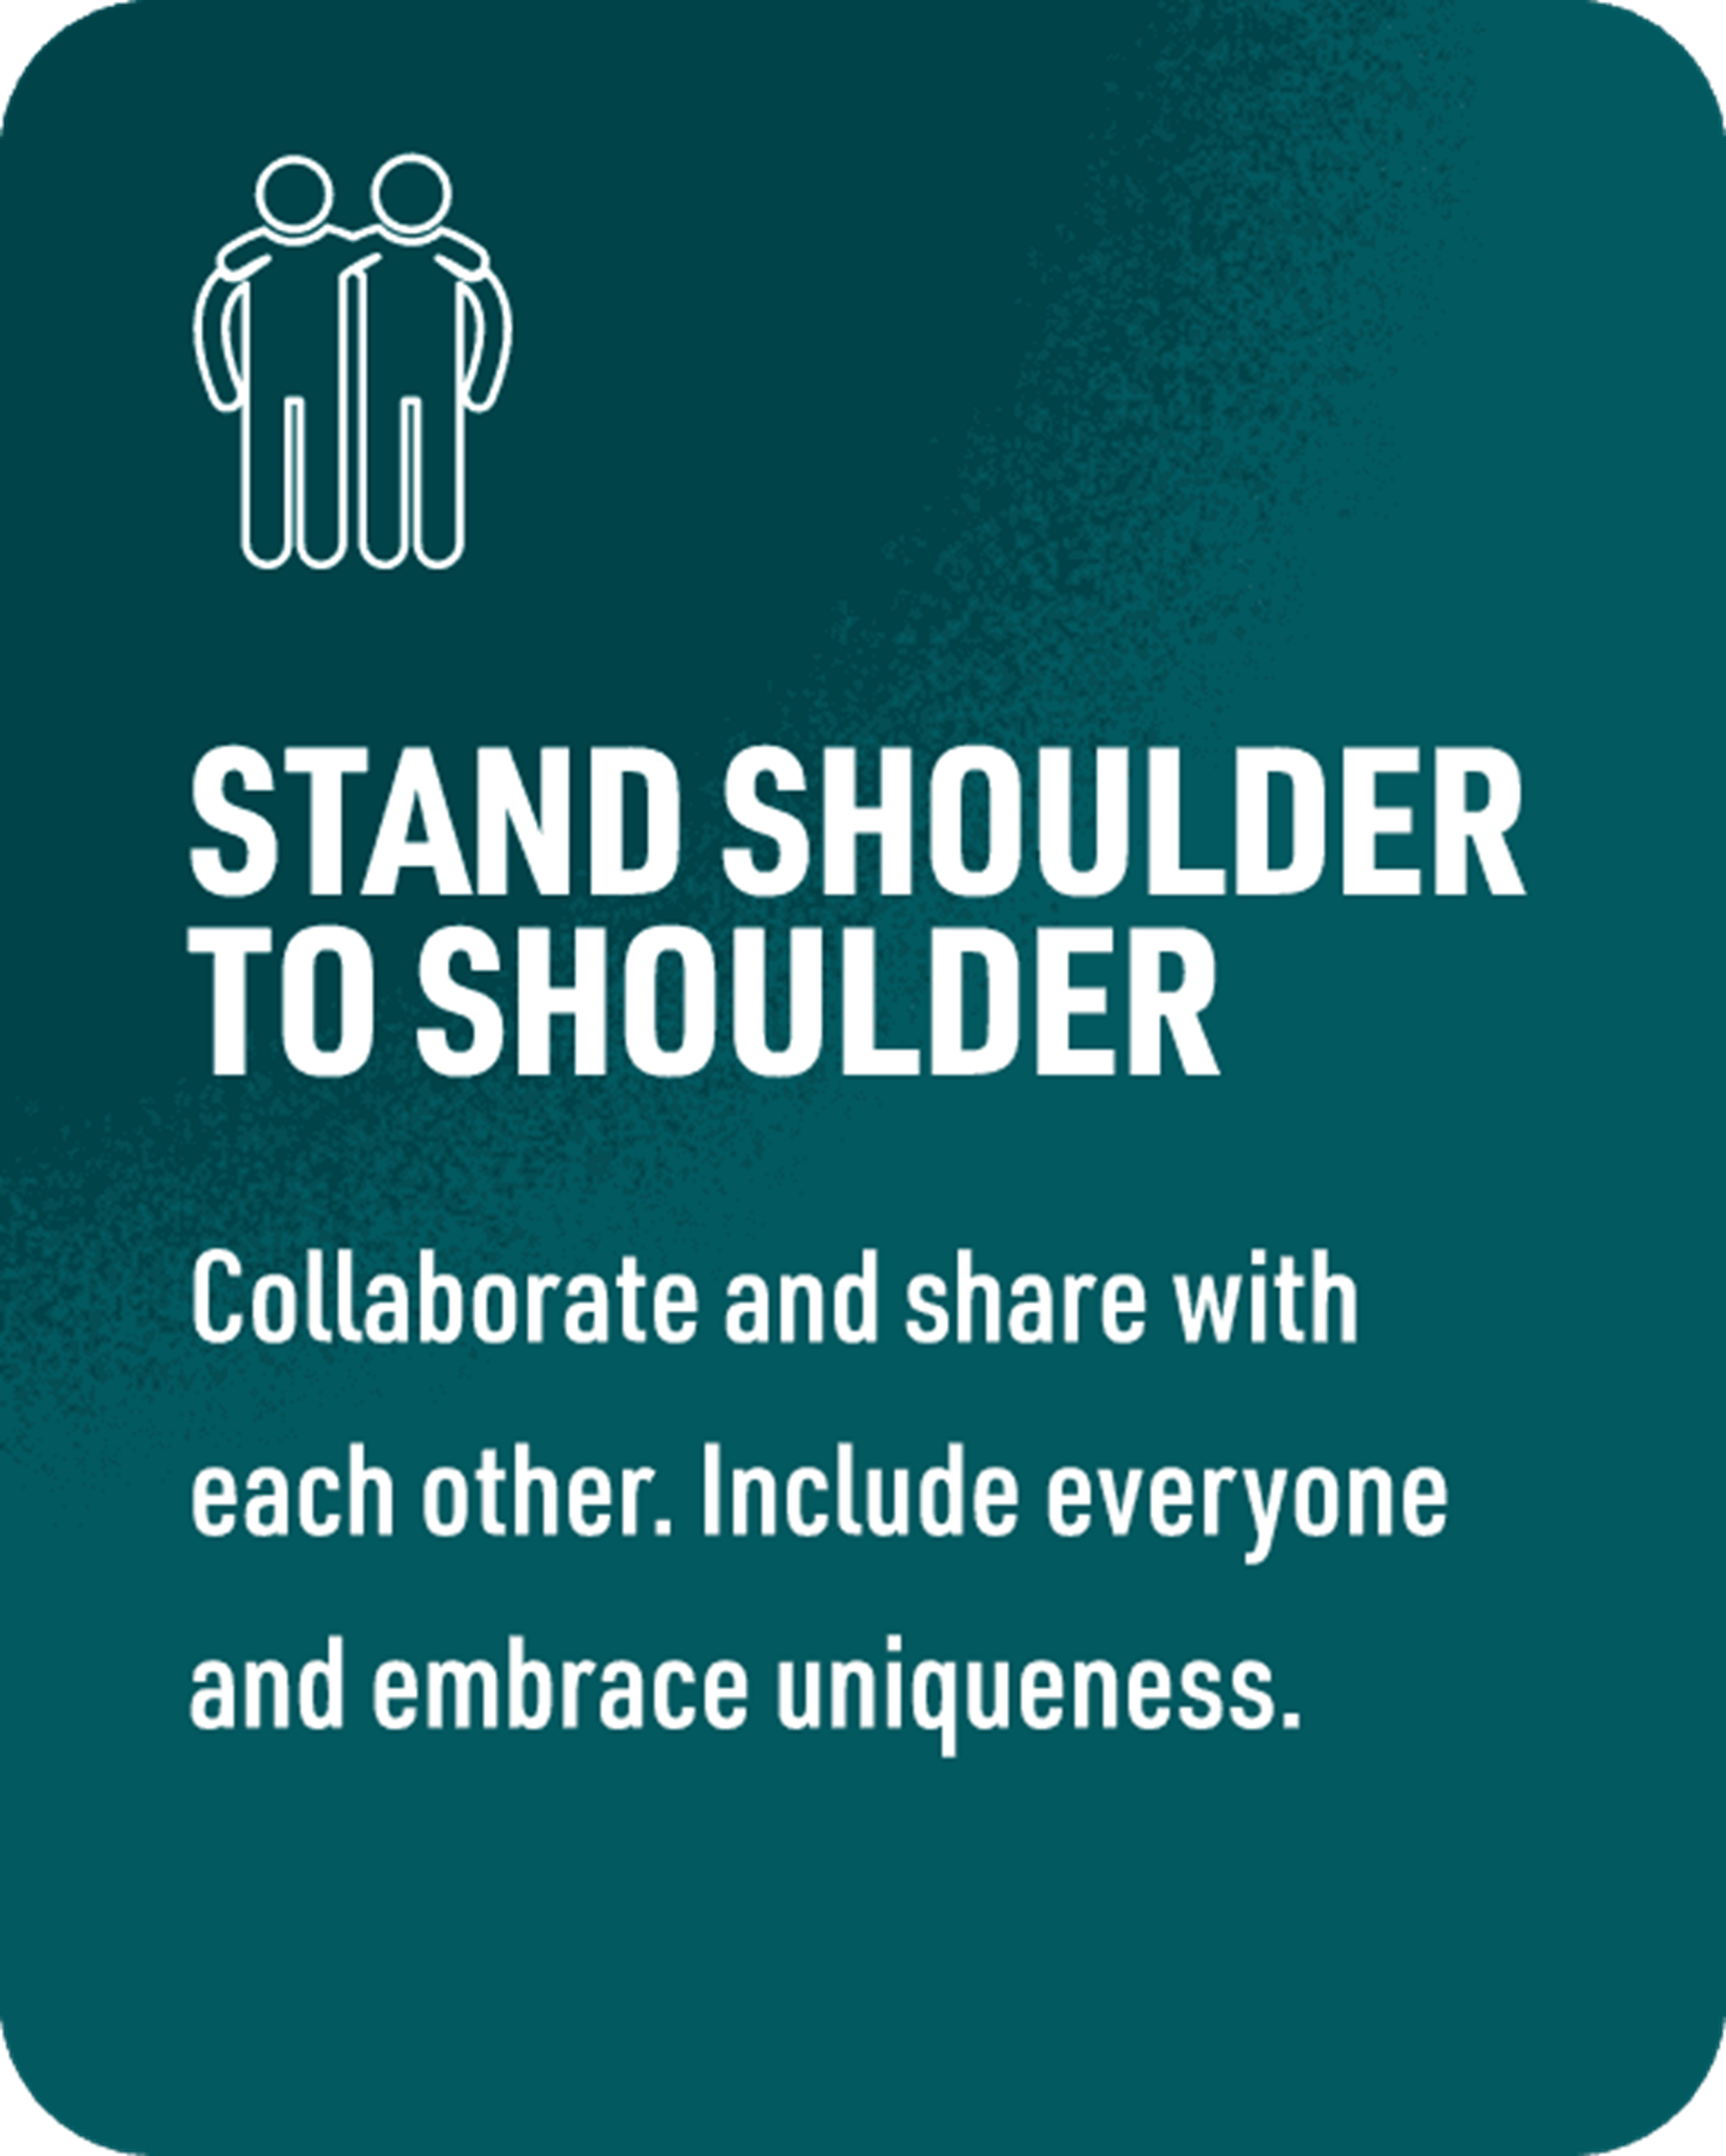 Stand shoulder to shoulder